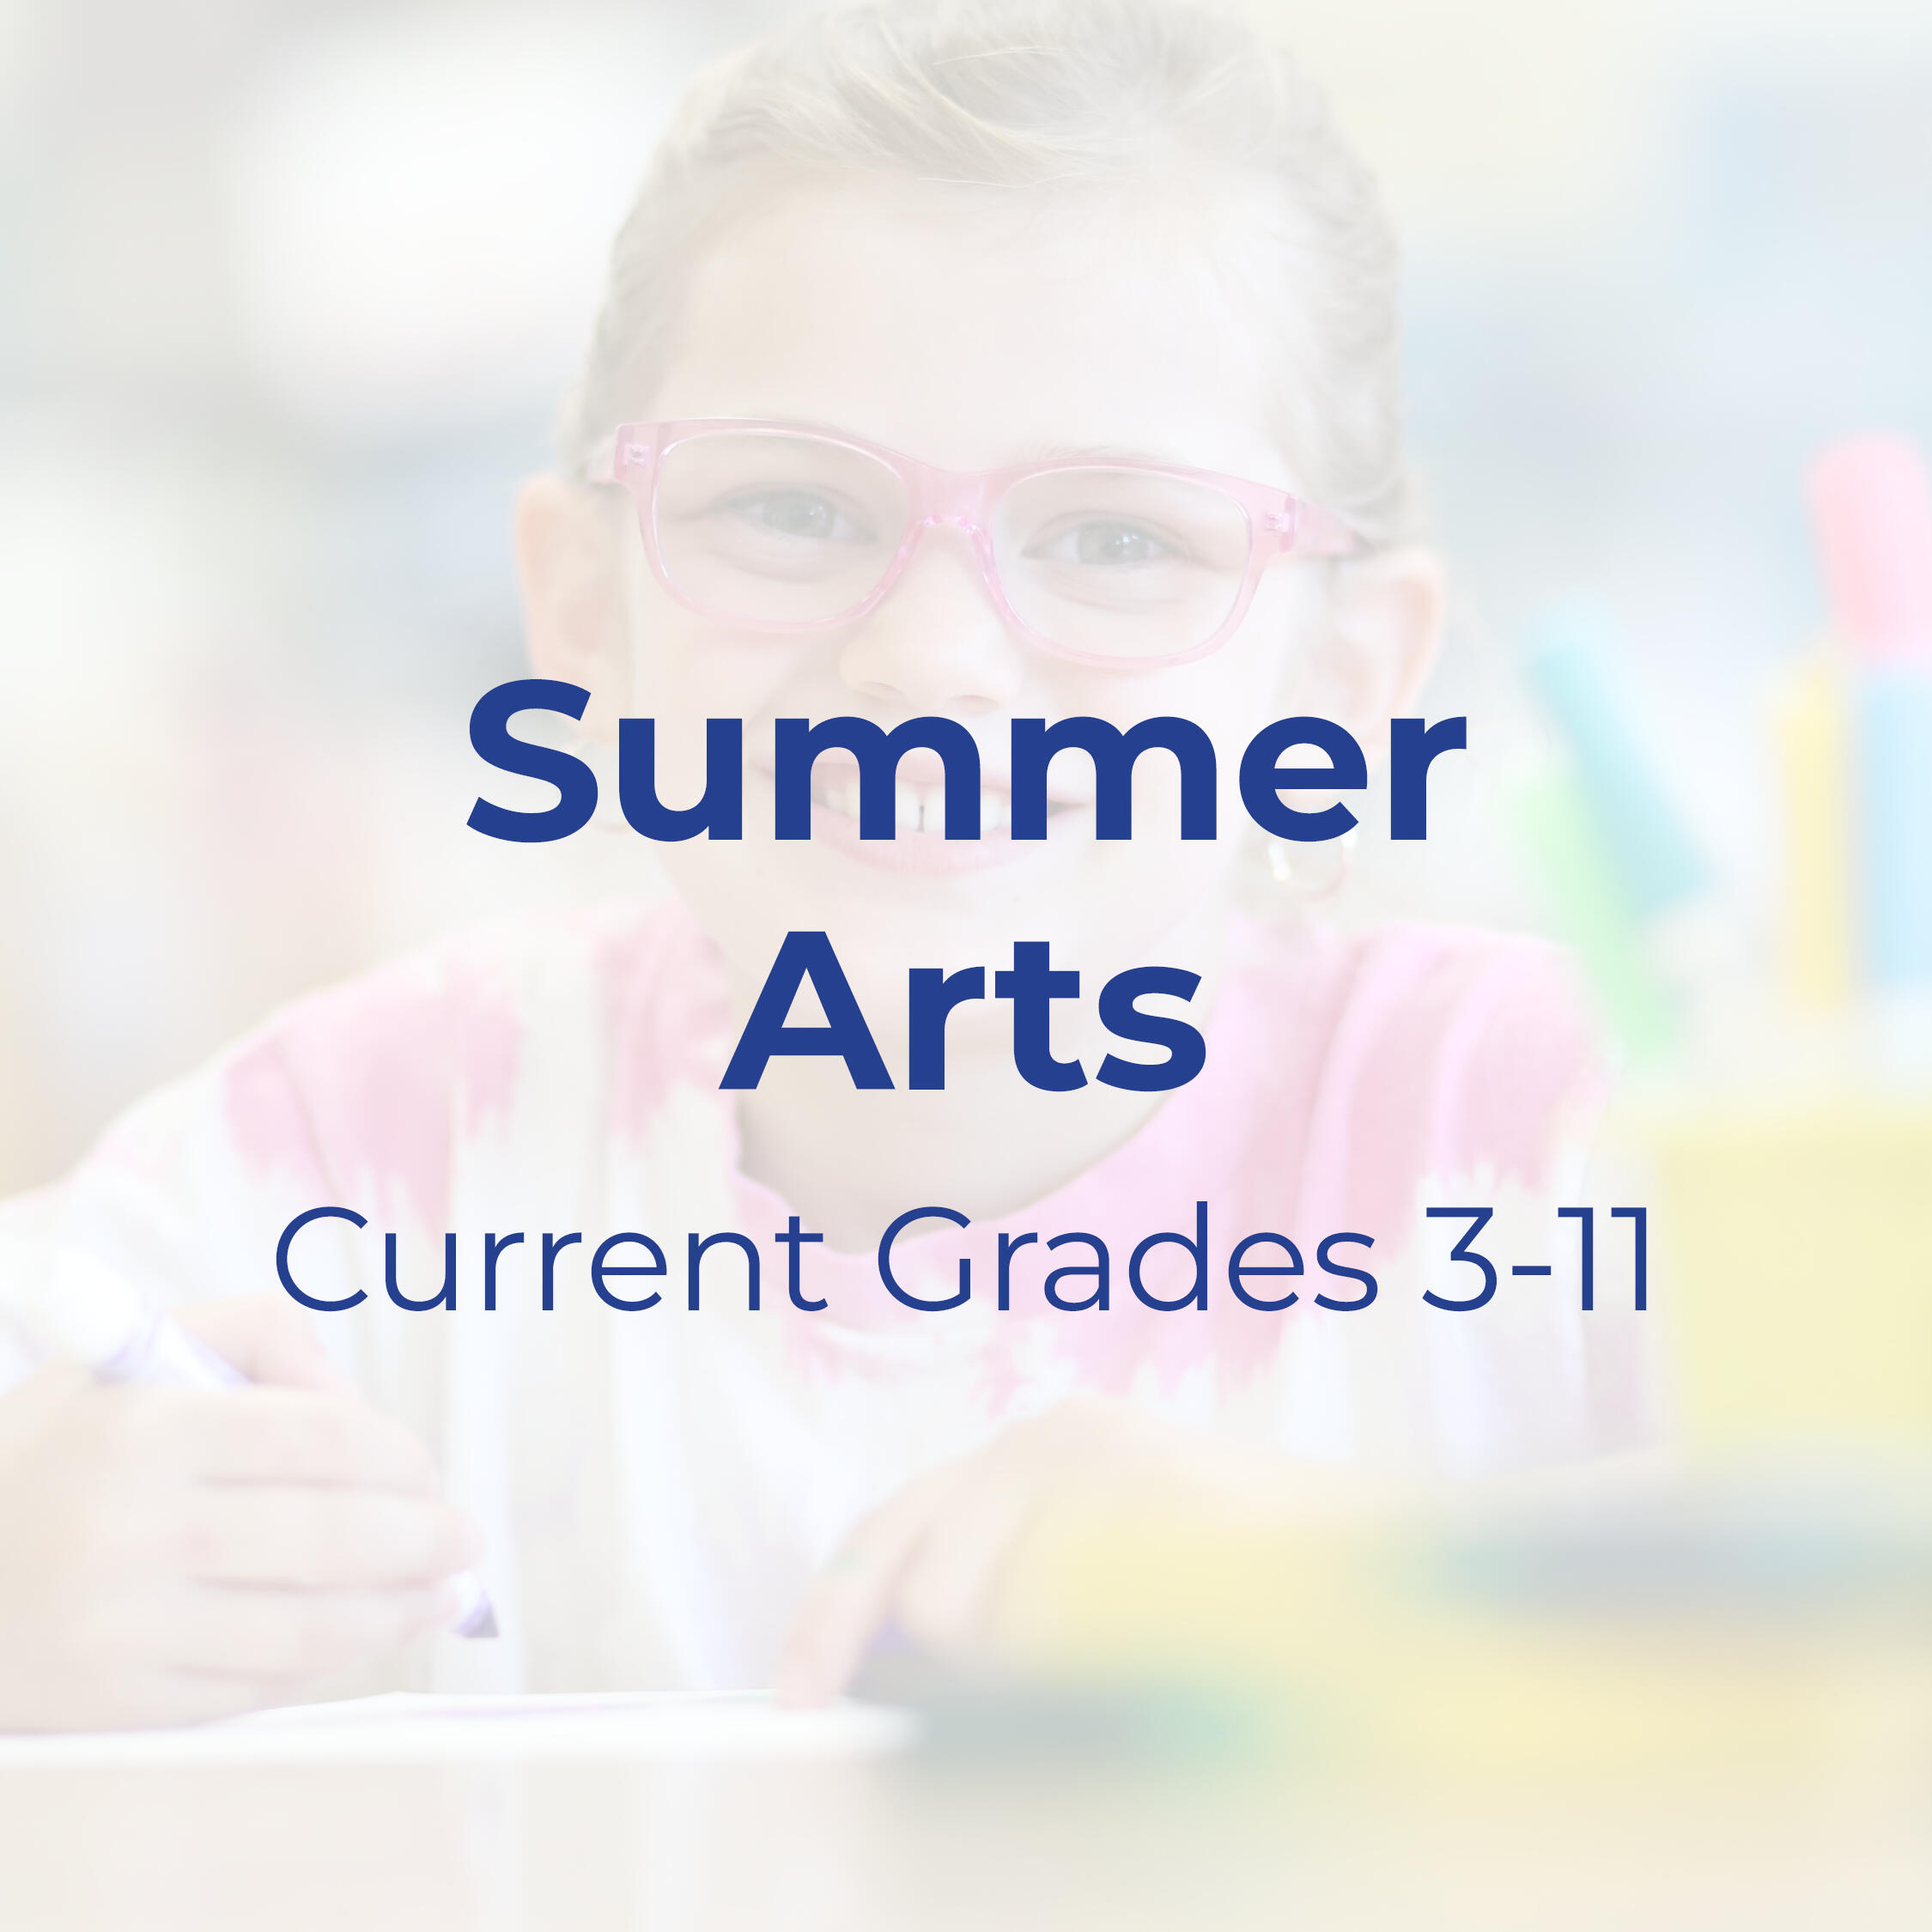 Text that reads "Summer Art: Current Grades 3-11" 